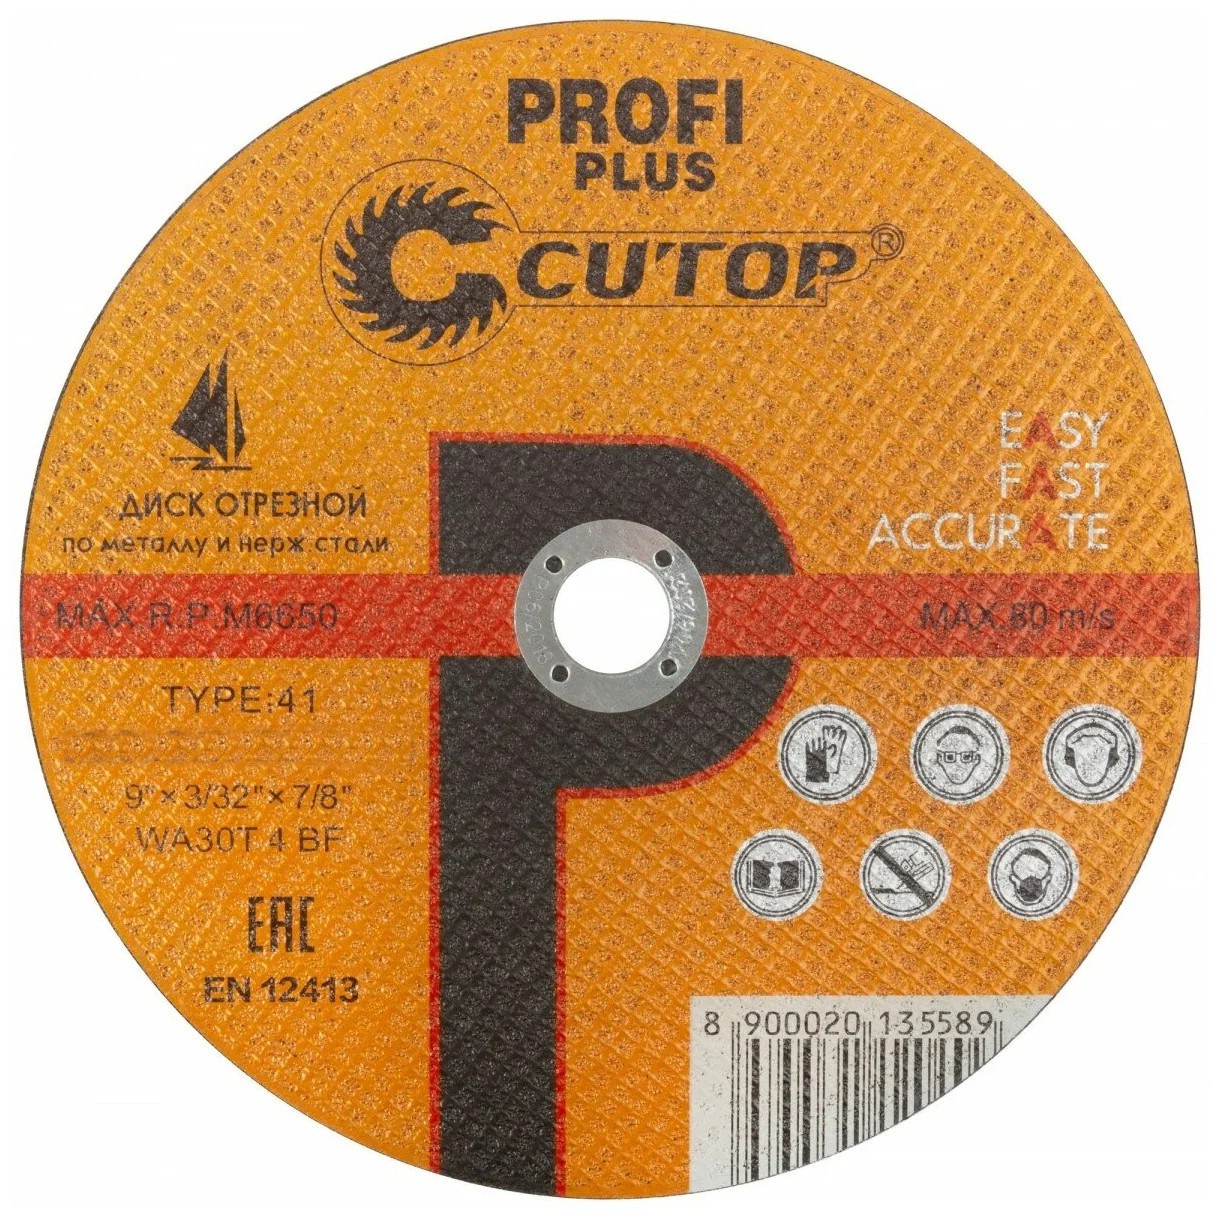 Диск отрезной по металлу и нержавеющей стали CUTOP Profi Plus - фото